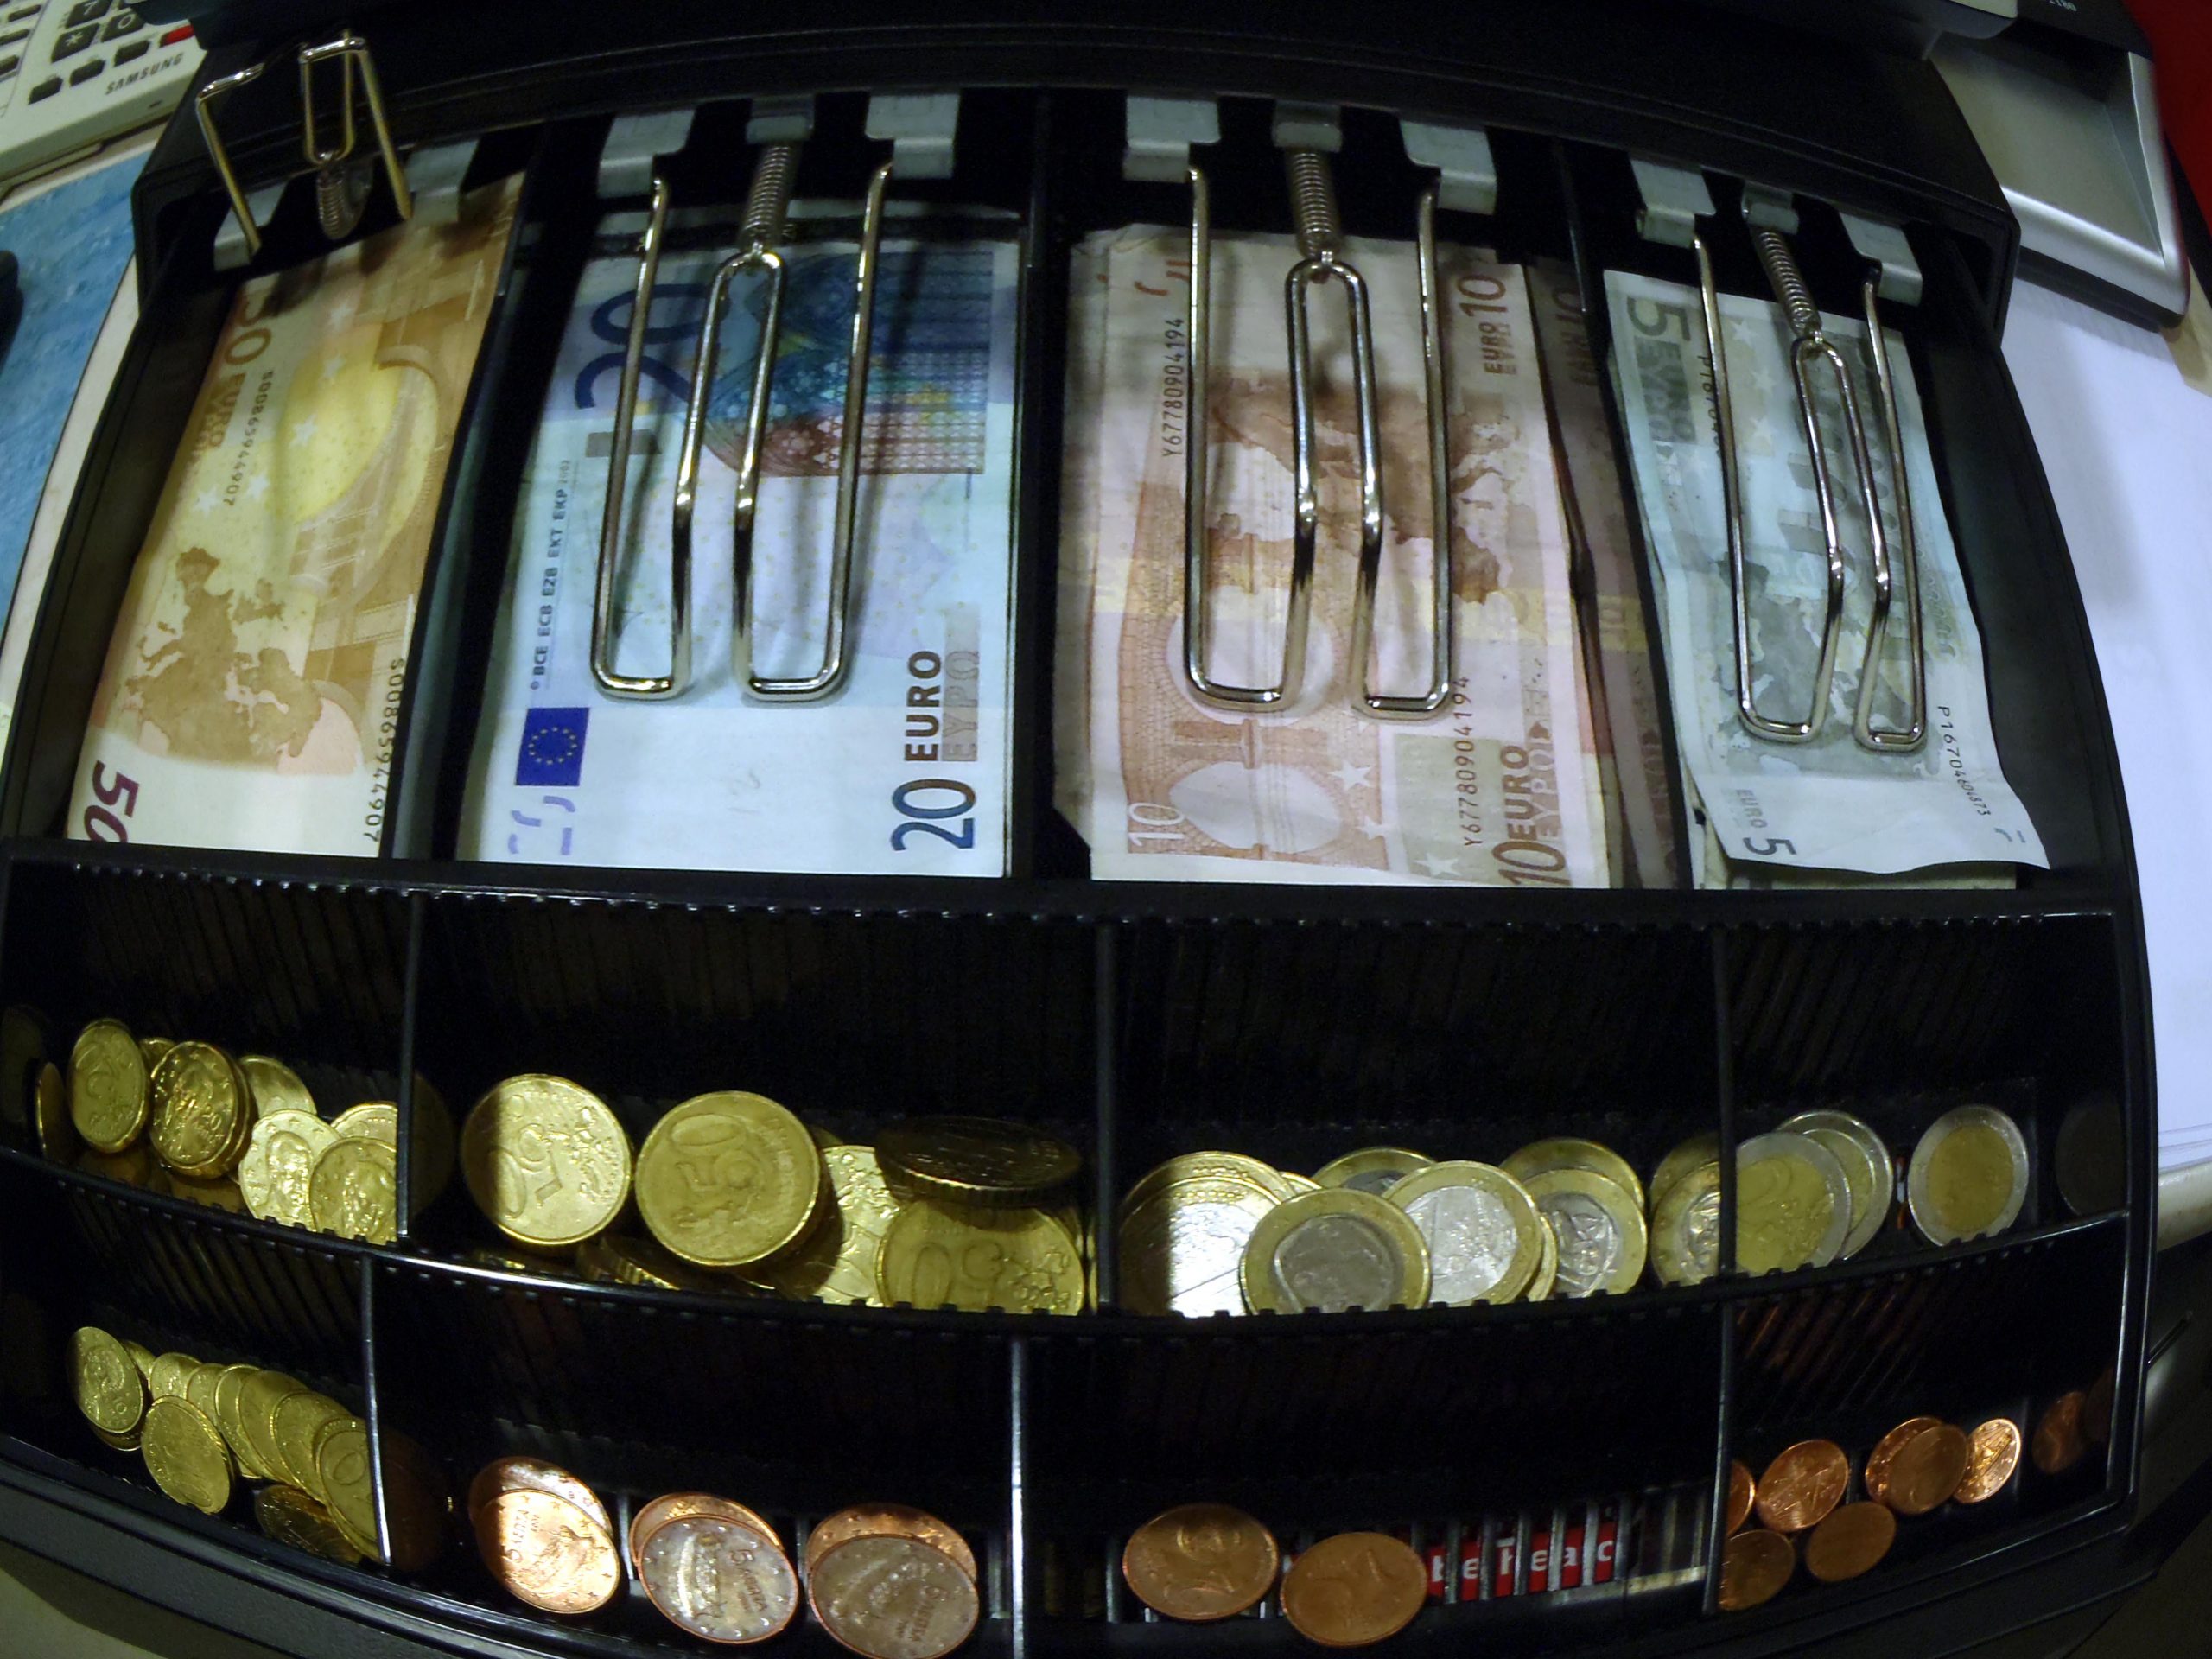 Κορονοϊός: Ιδού τα οικονομικά μέτρα που ανακοίνωσε η κυβέρνηση!